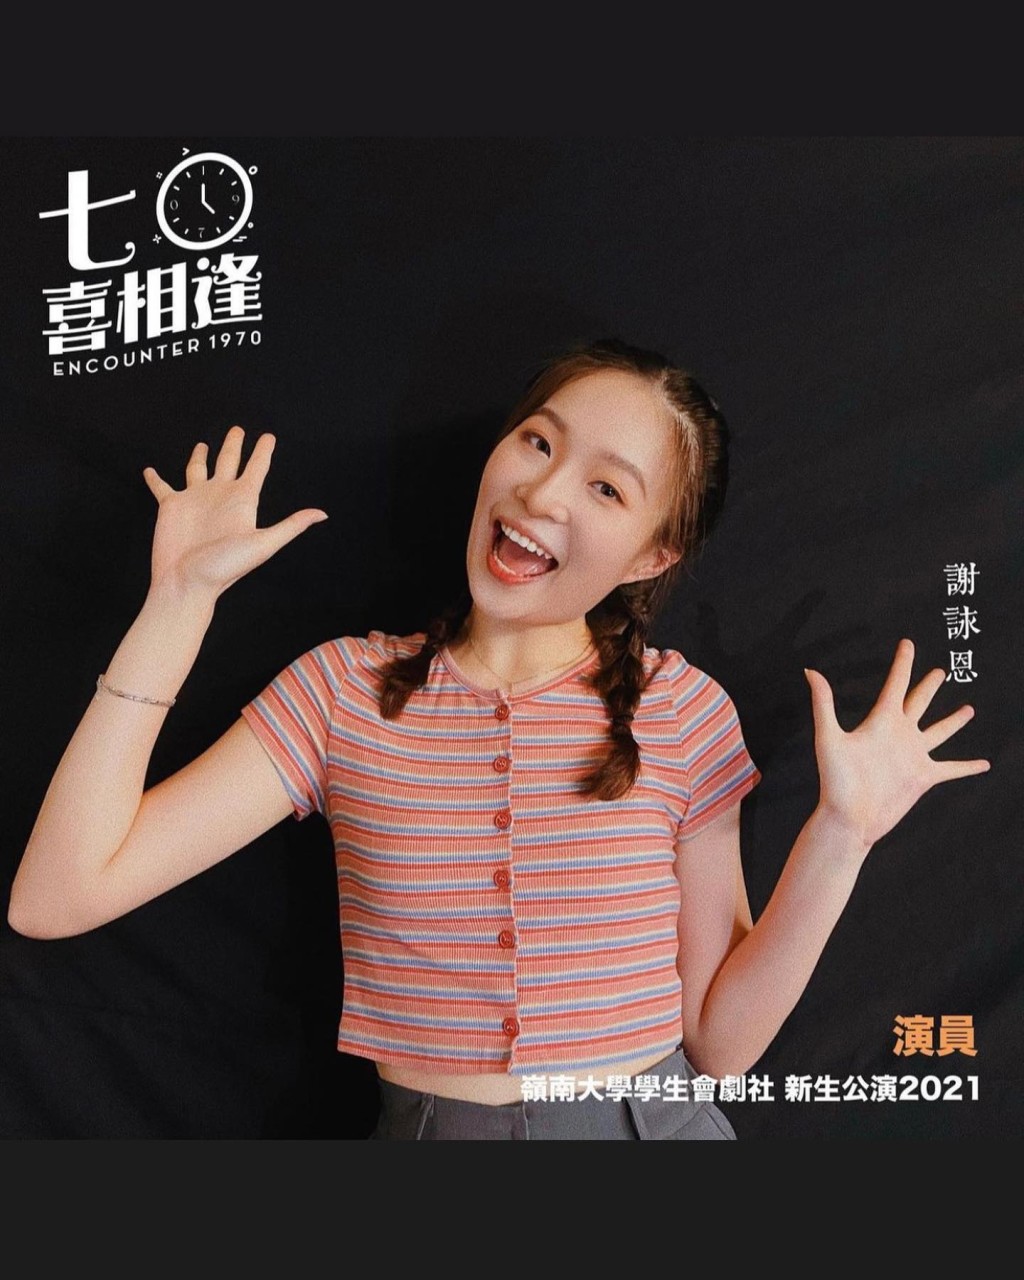 成功當選舞台劇《七〇喜相逢》的女主角「若晴」。